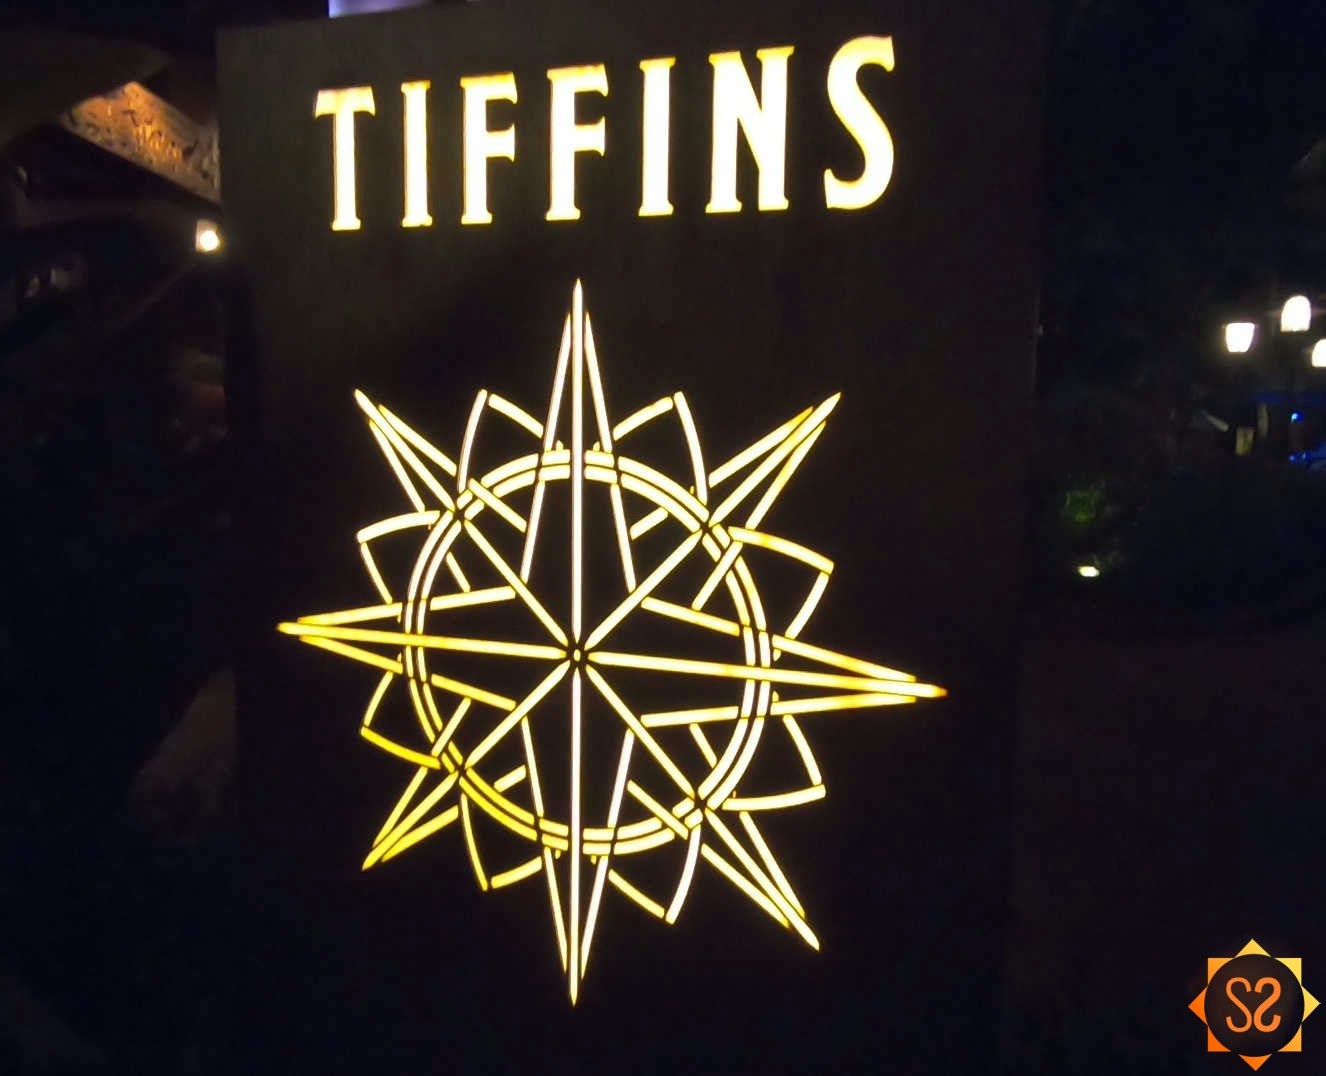 Tiffins sign